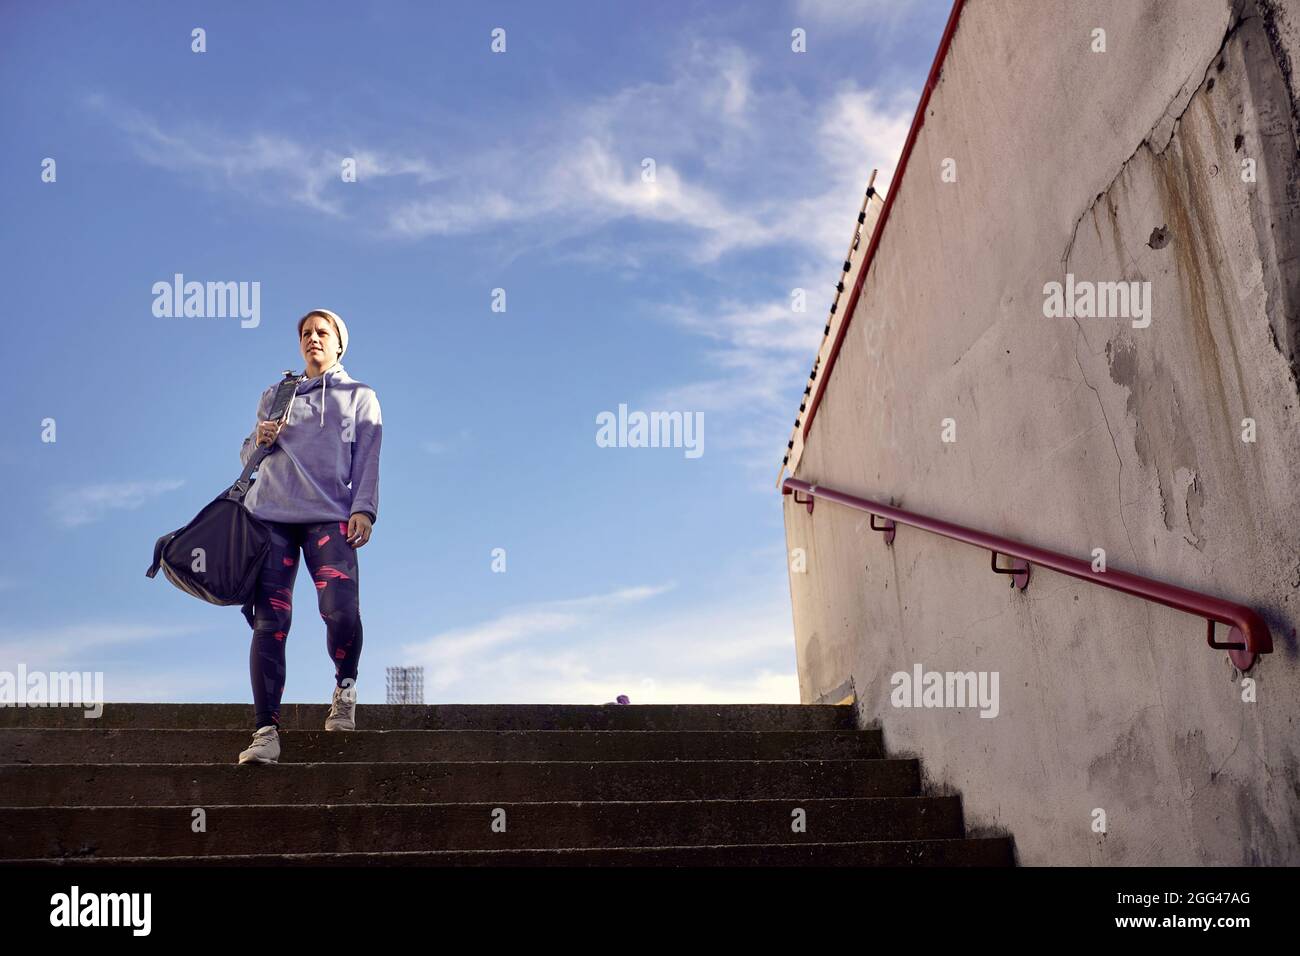 Activity girl runner holds sport bag, training on stadium Stock Photo